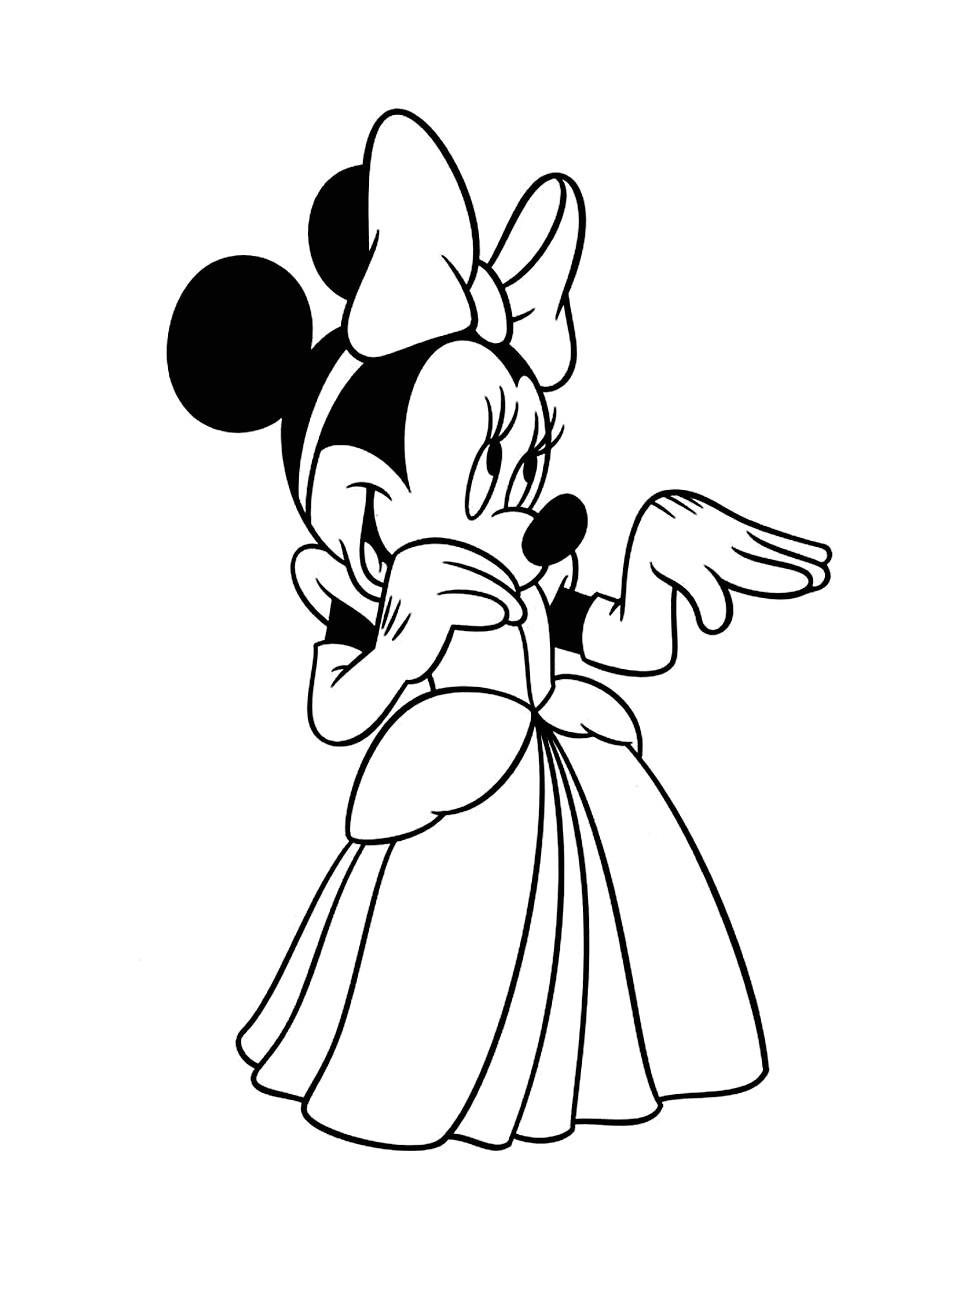 Coloriage À Imprimer Minnie Nice Coloriage Minnie Gratuit à Imprimer Coloriage Mickey Et